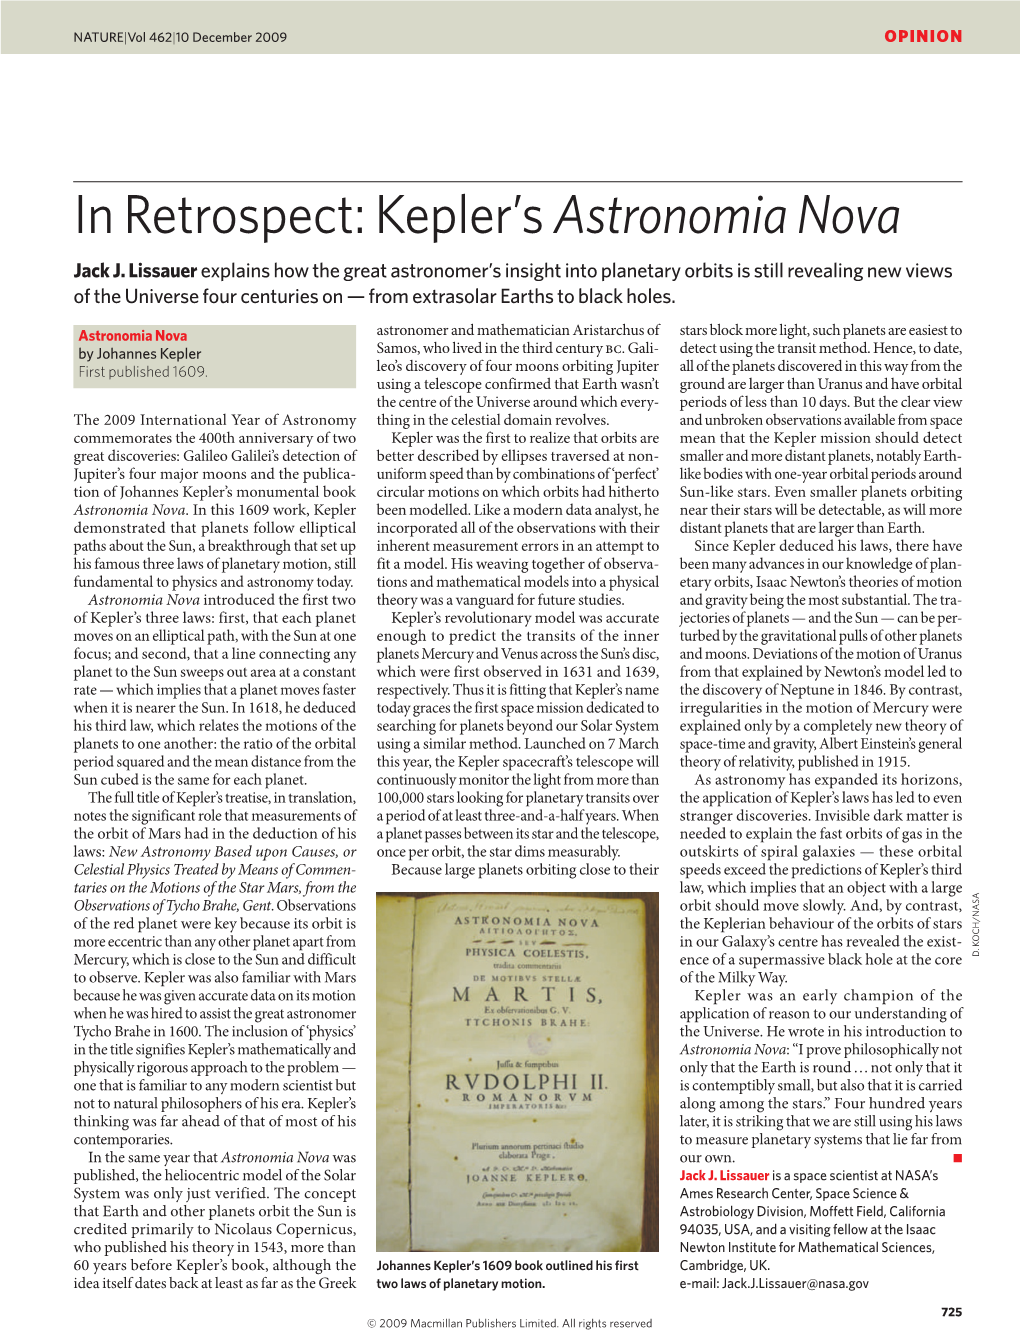 In Retrospect: Kepler's Astronomia Nova